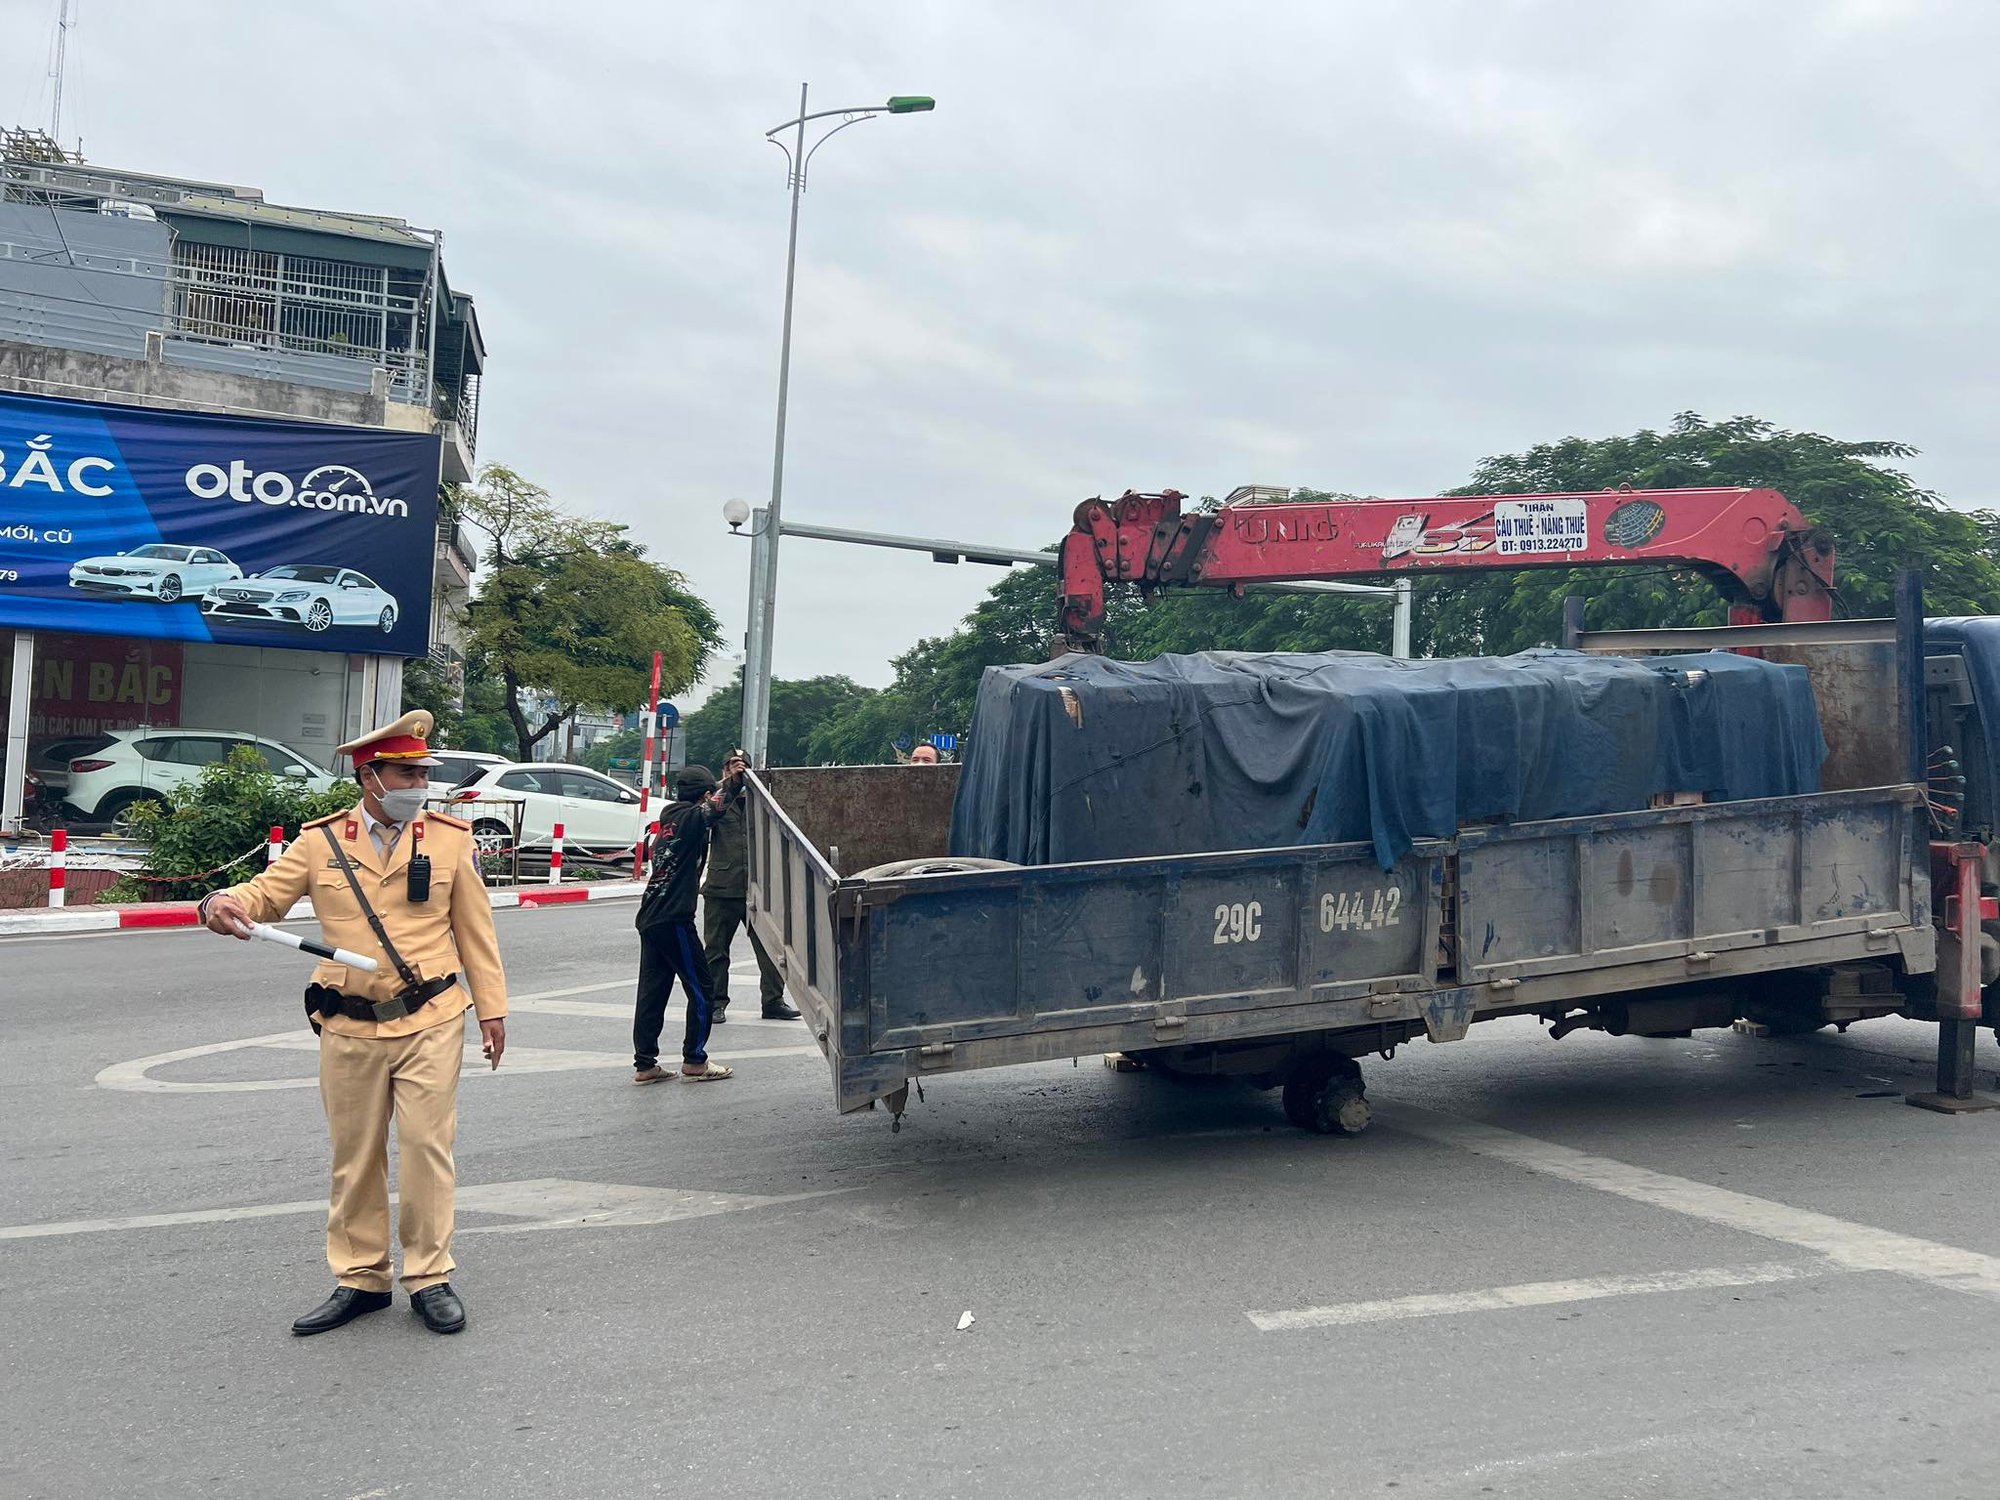 Hà Nội:
CSGT nhanh chóng cứu hộ xe ô tô tải đang đi tuột bánh sau - Ảnh 1.